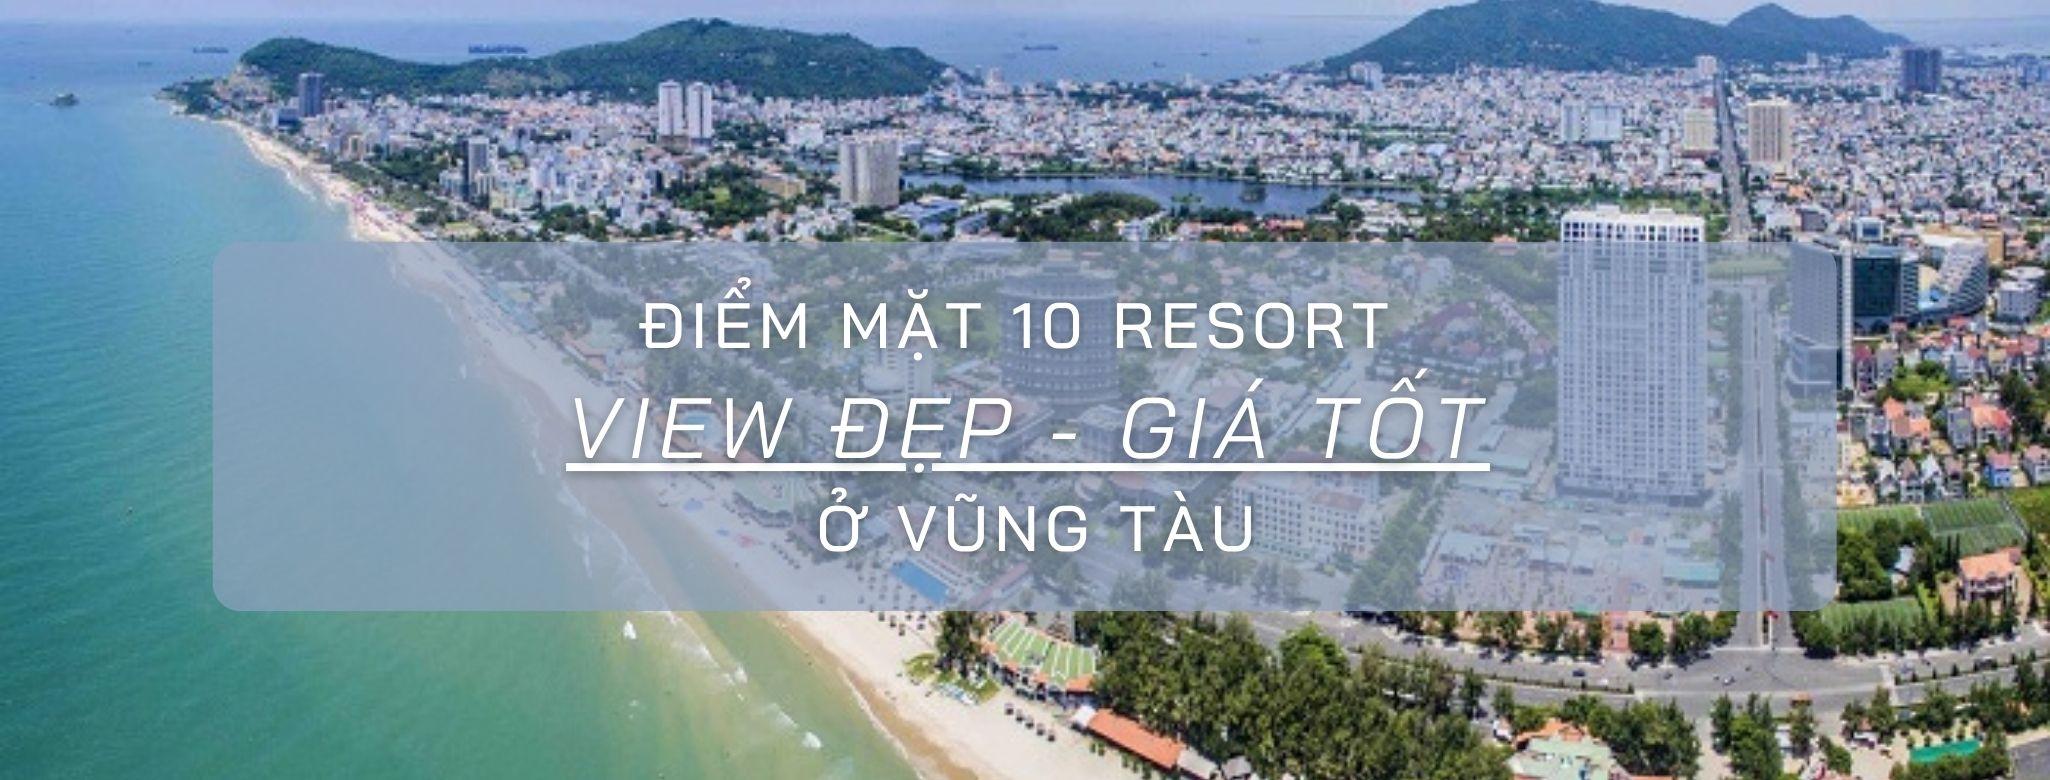 Điểm mặt 10 resort view đẹp – giá tốt ở Vũng Tàu: Bạn đã biết chưa?